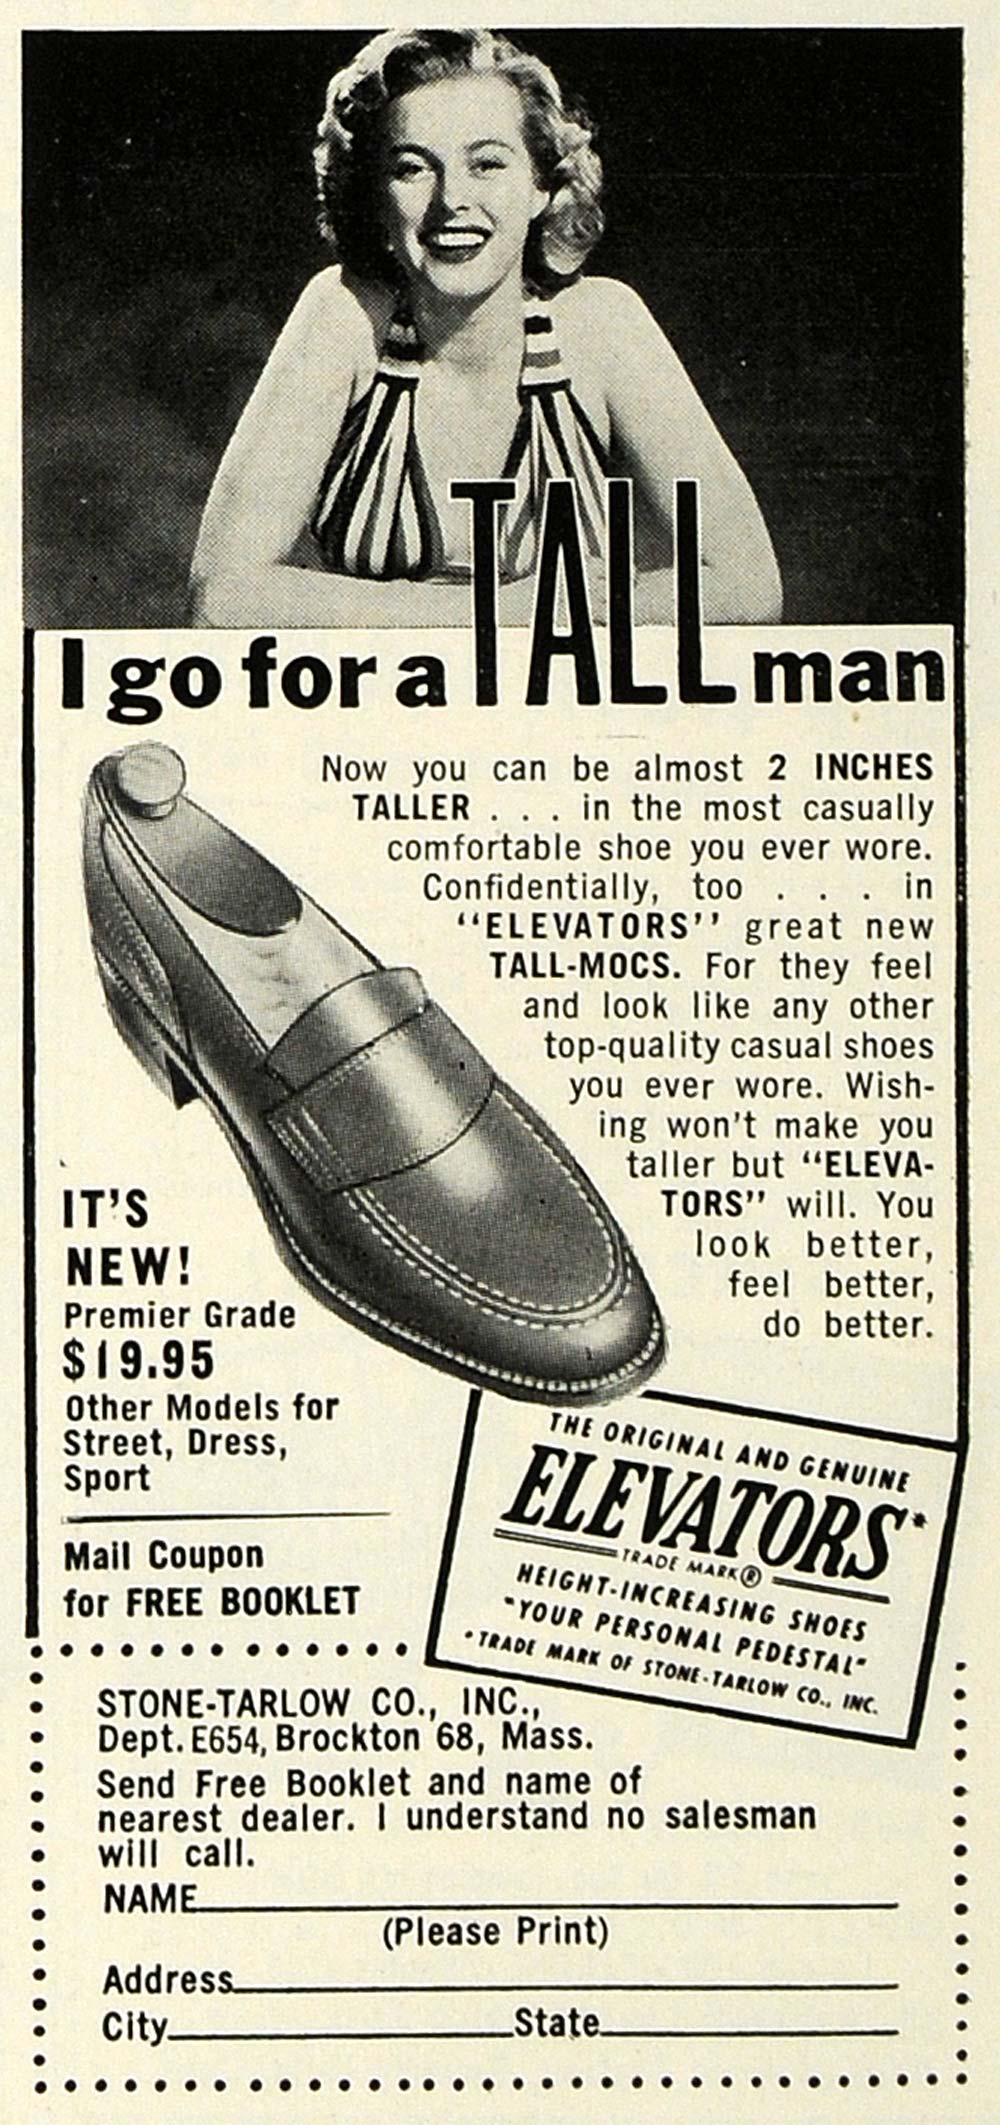 1954 Ad Stone-Tarlow Co. Inc. Elevator Tall-Mocs Shoes - ORIGINAL ESQ4